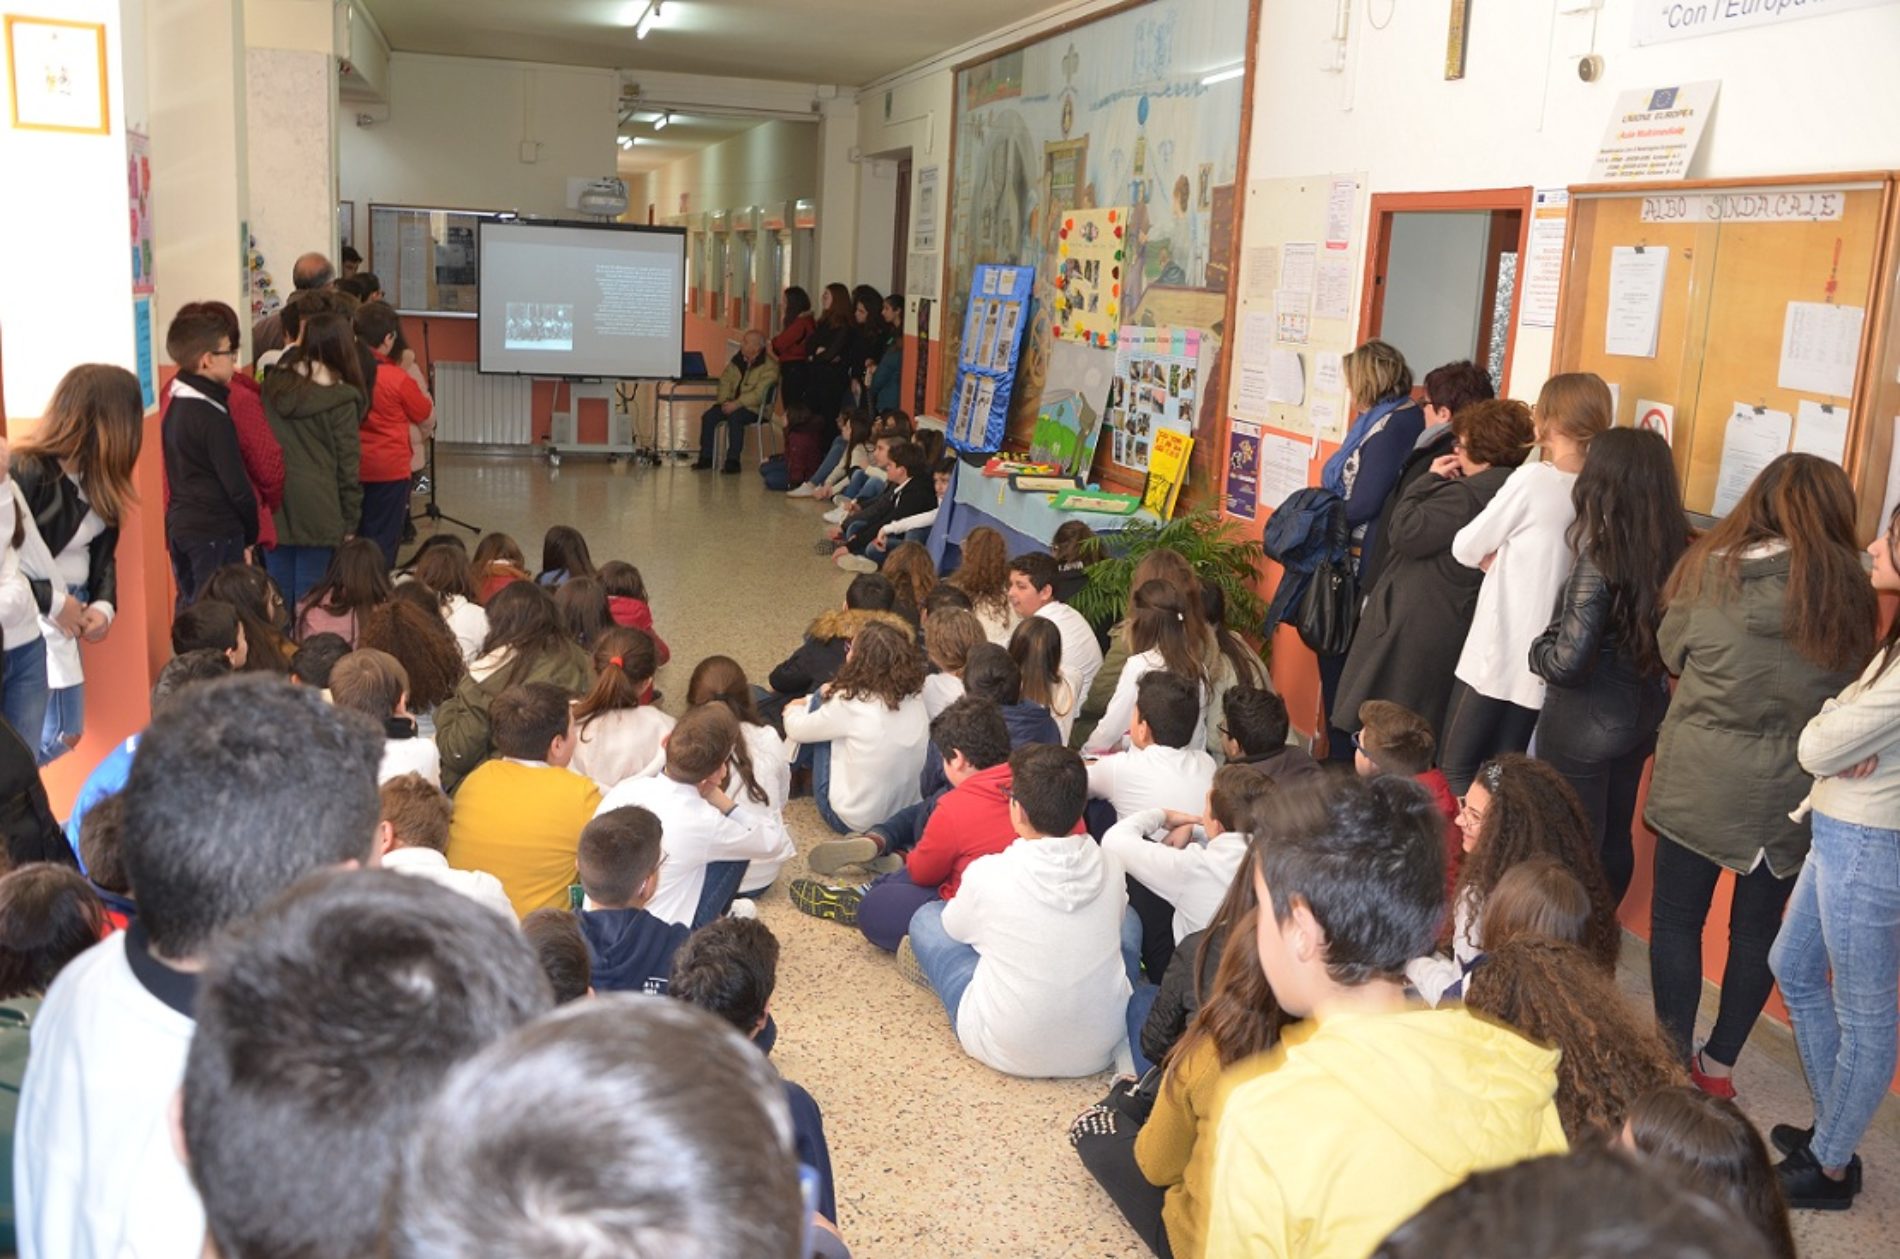 Manifestazione di chiusura del “Progetto Crocus” presso al scuola “G. Verga” di Barrafranca